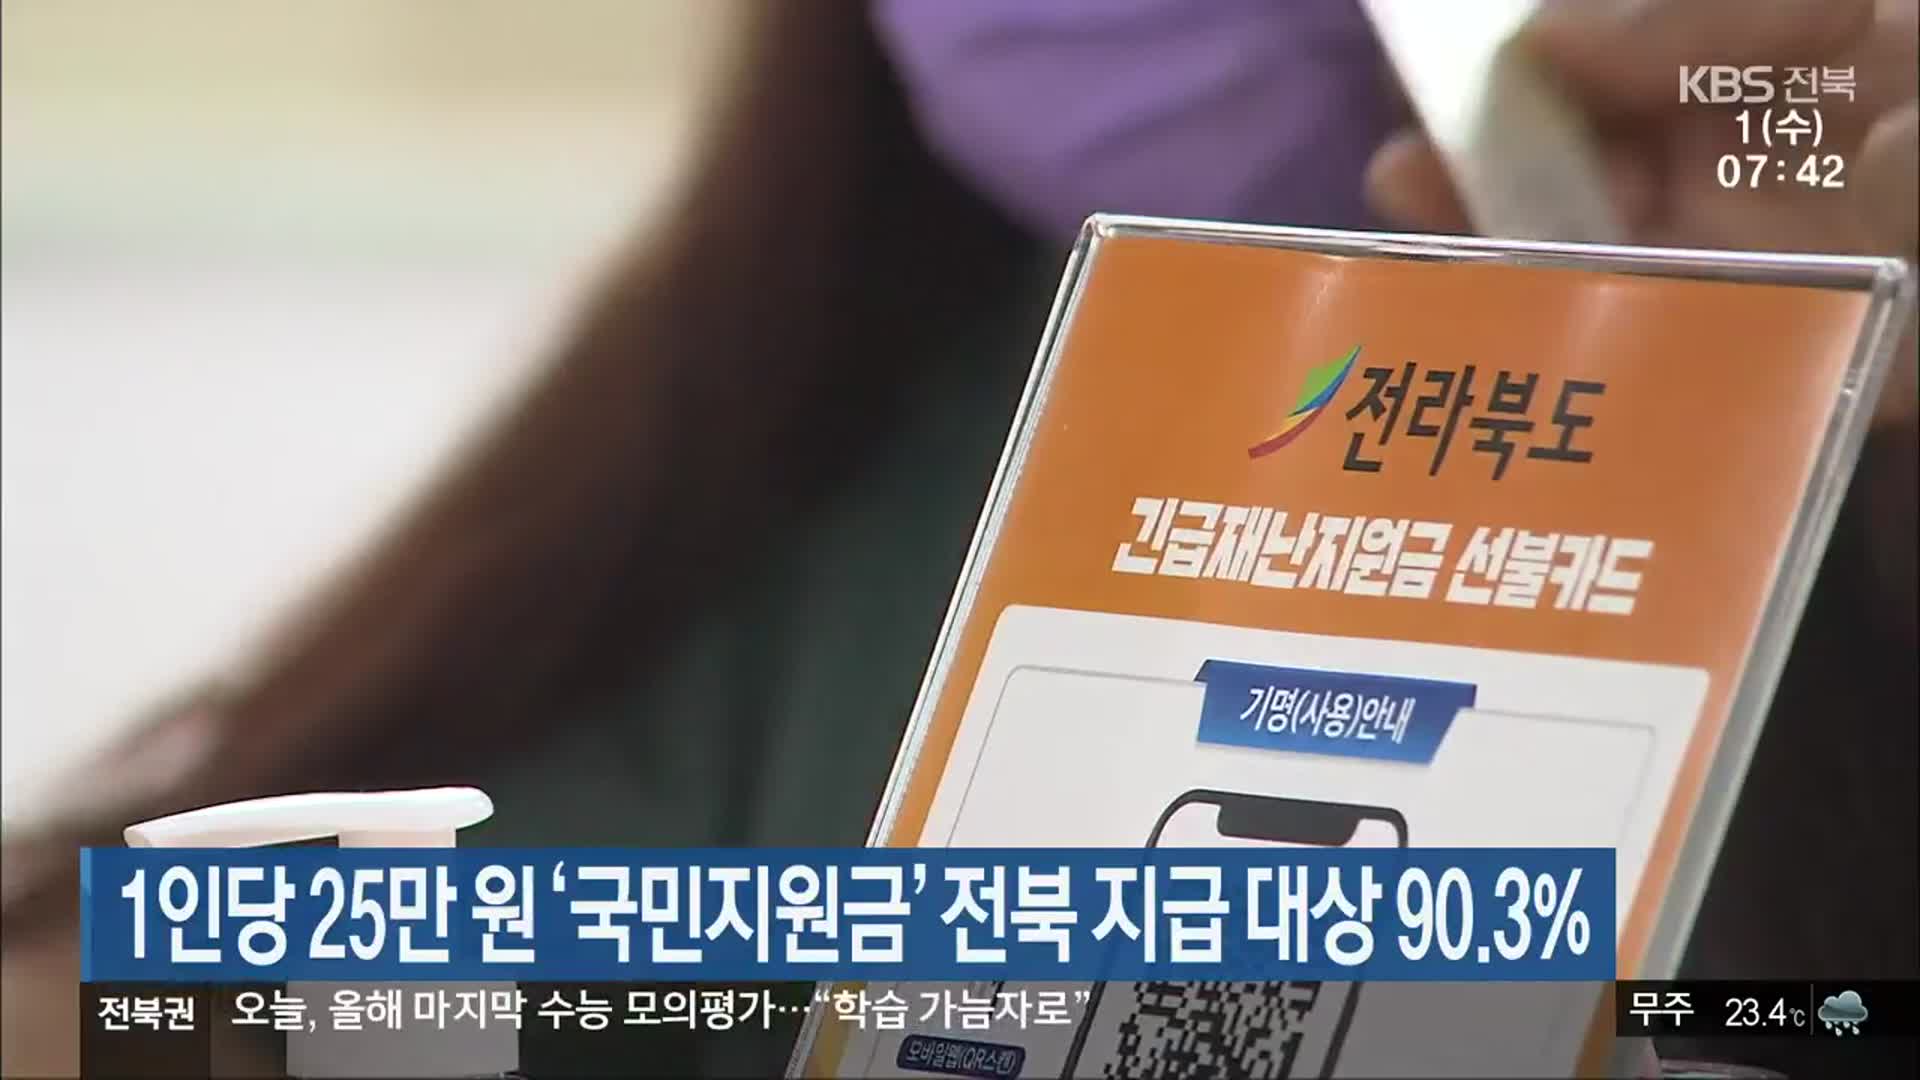 1인당 25만 원 ‘국민지원금’ 전북 지급 대상 90.3% 